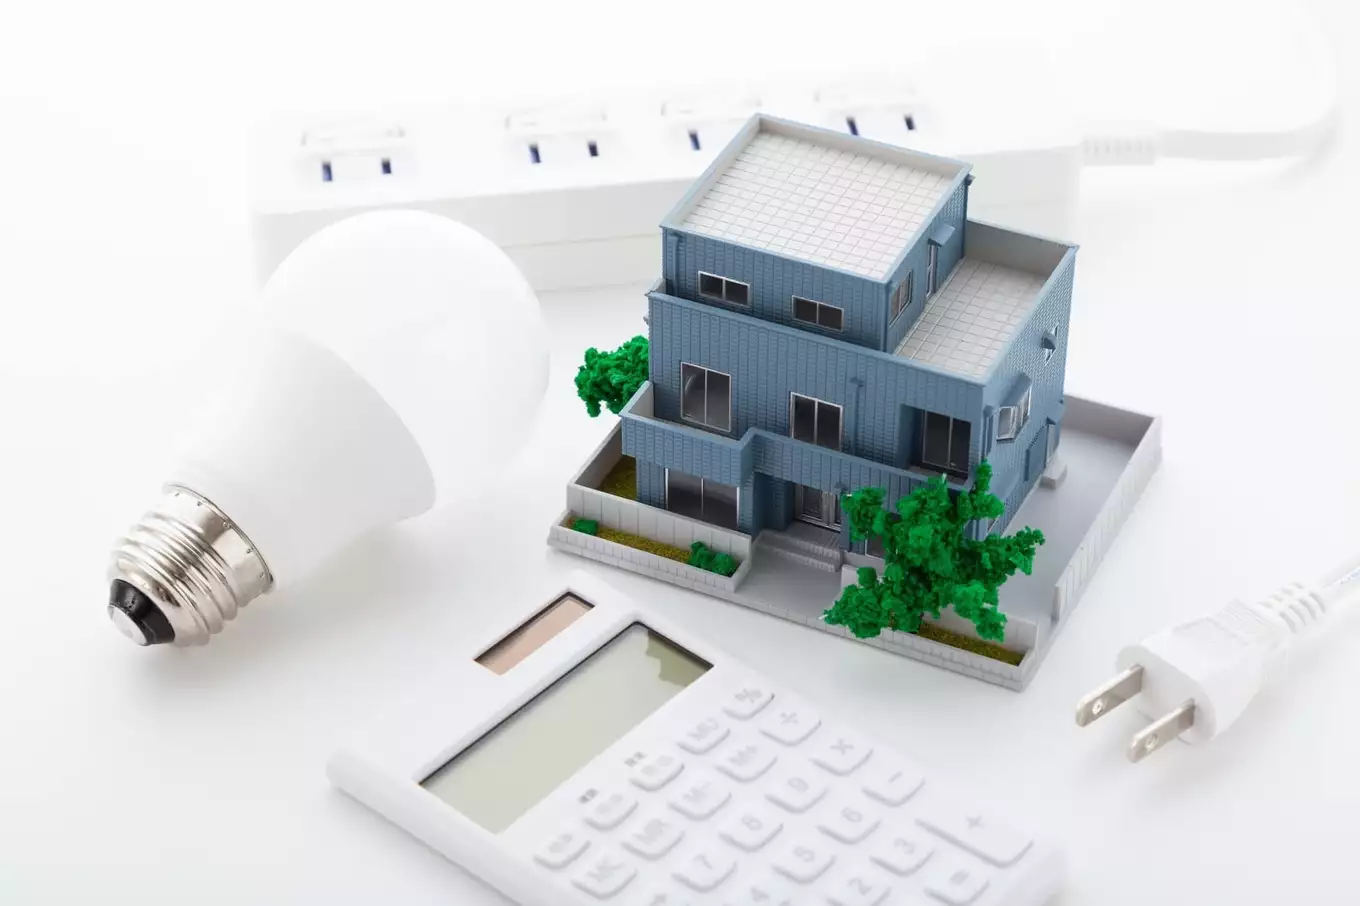 住宅模型と電卓と電球